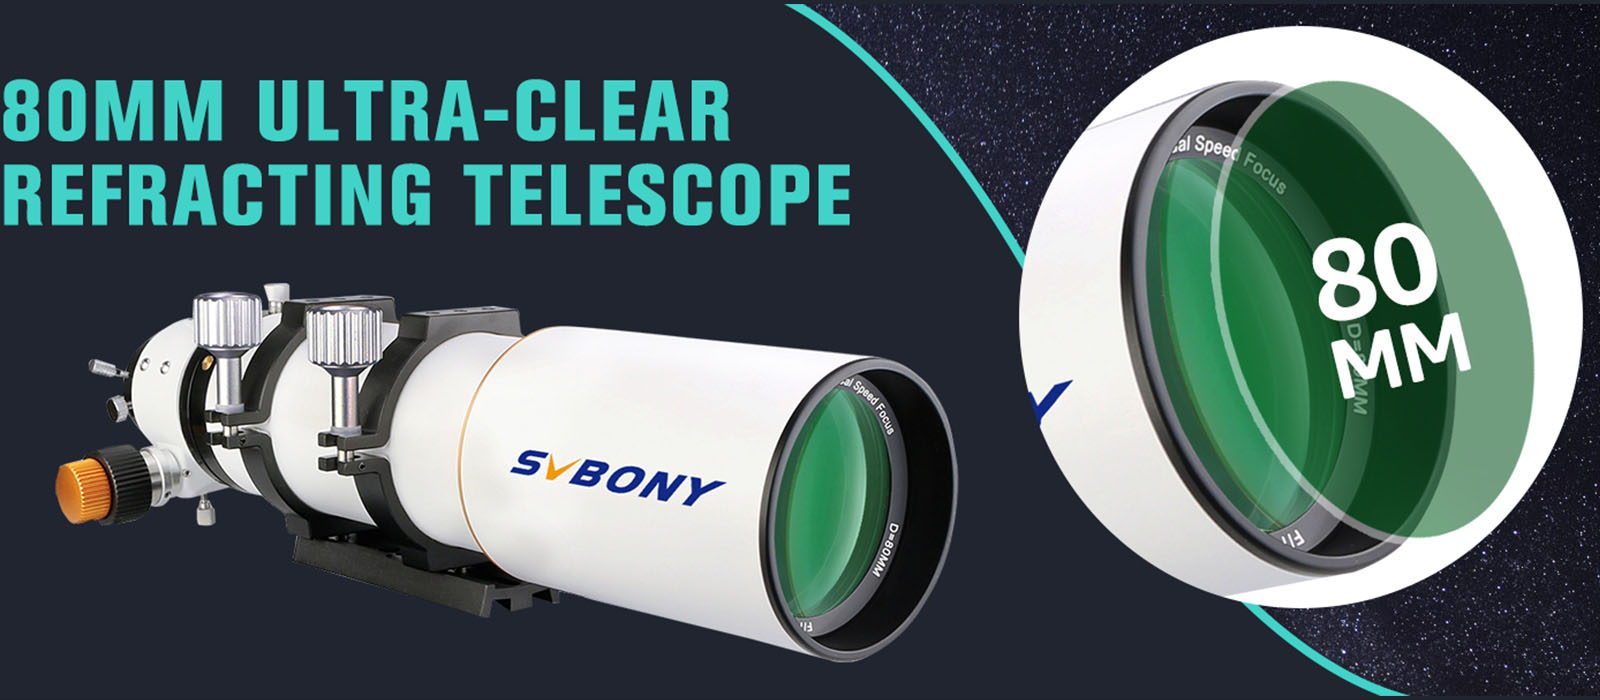 クリアランス販売済み SVBONY SV503 Telescope 80ED F7 OTA Focal Length 560mm Universal  光学機器アクセサリー